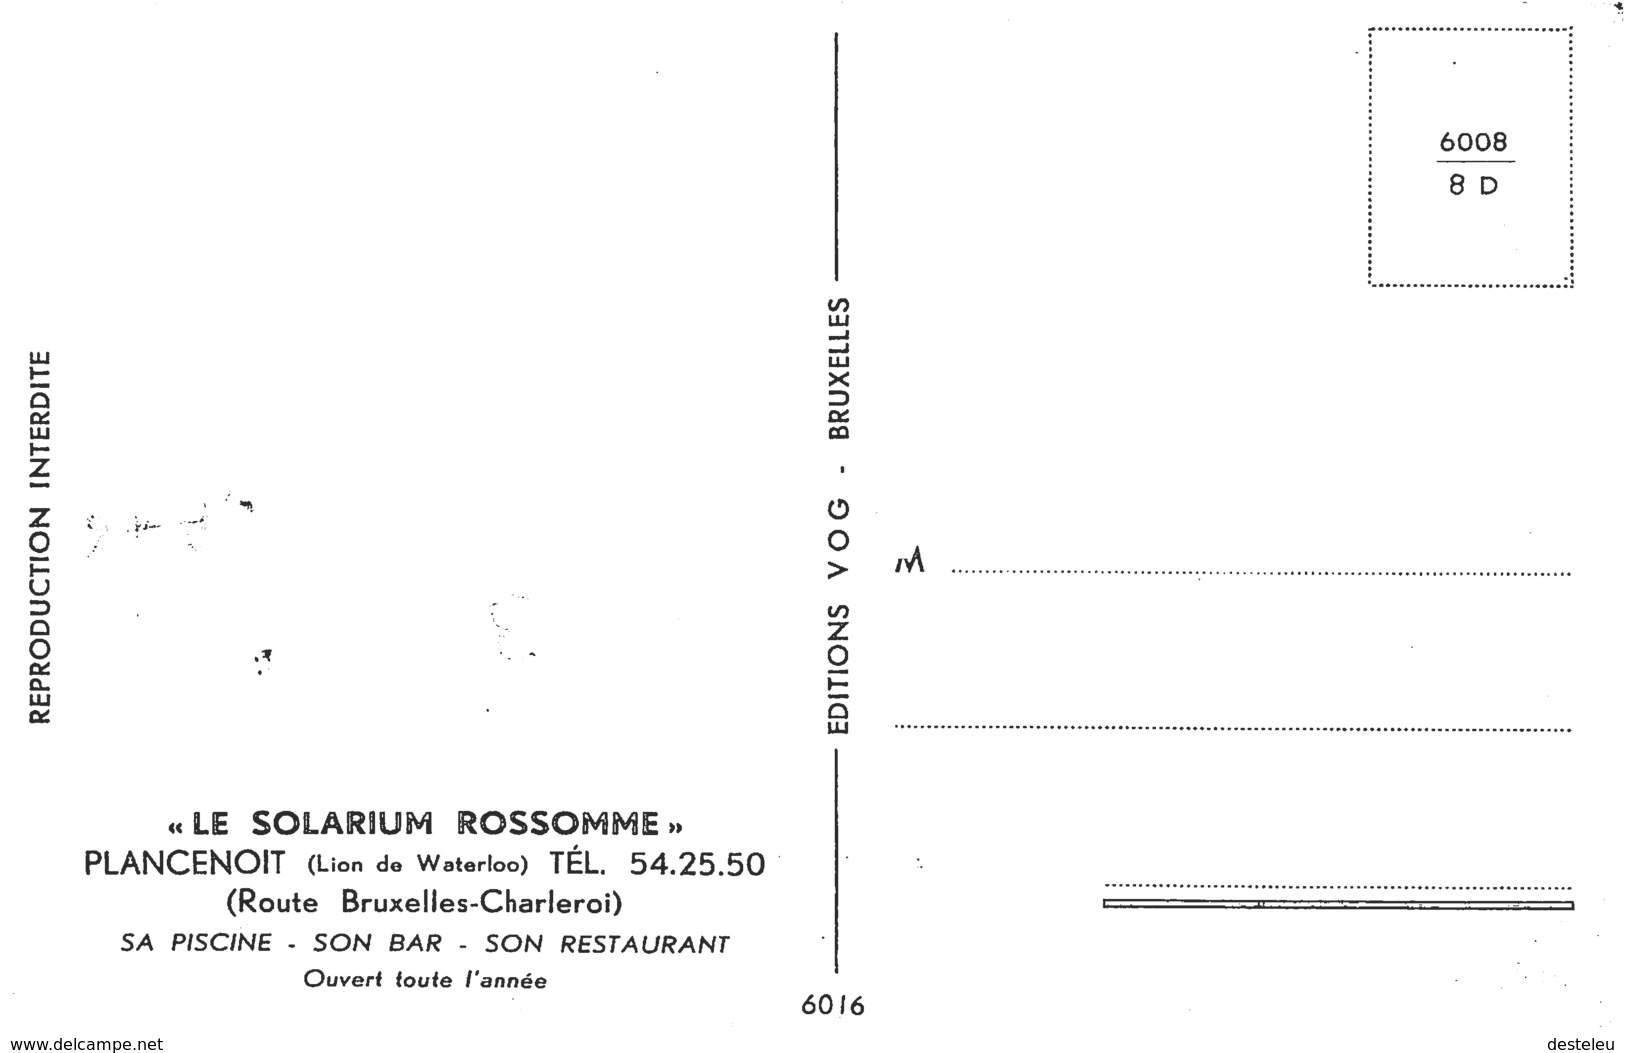 Le Solarium Rossomme - Plancenoit - Lasne